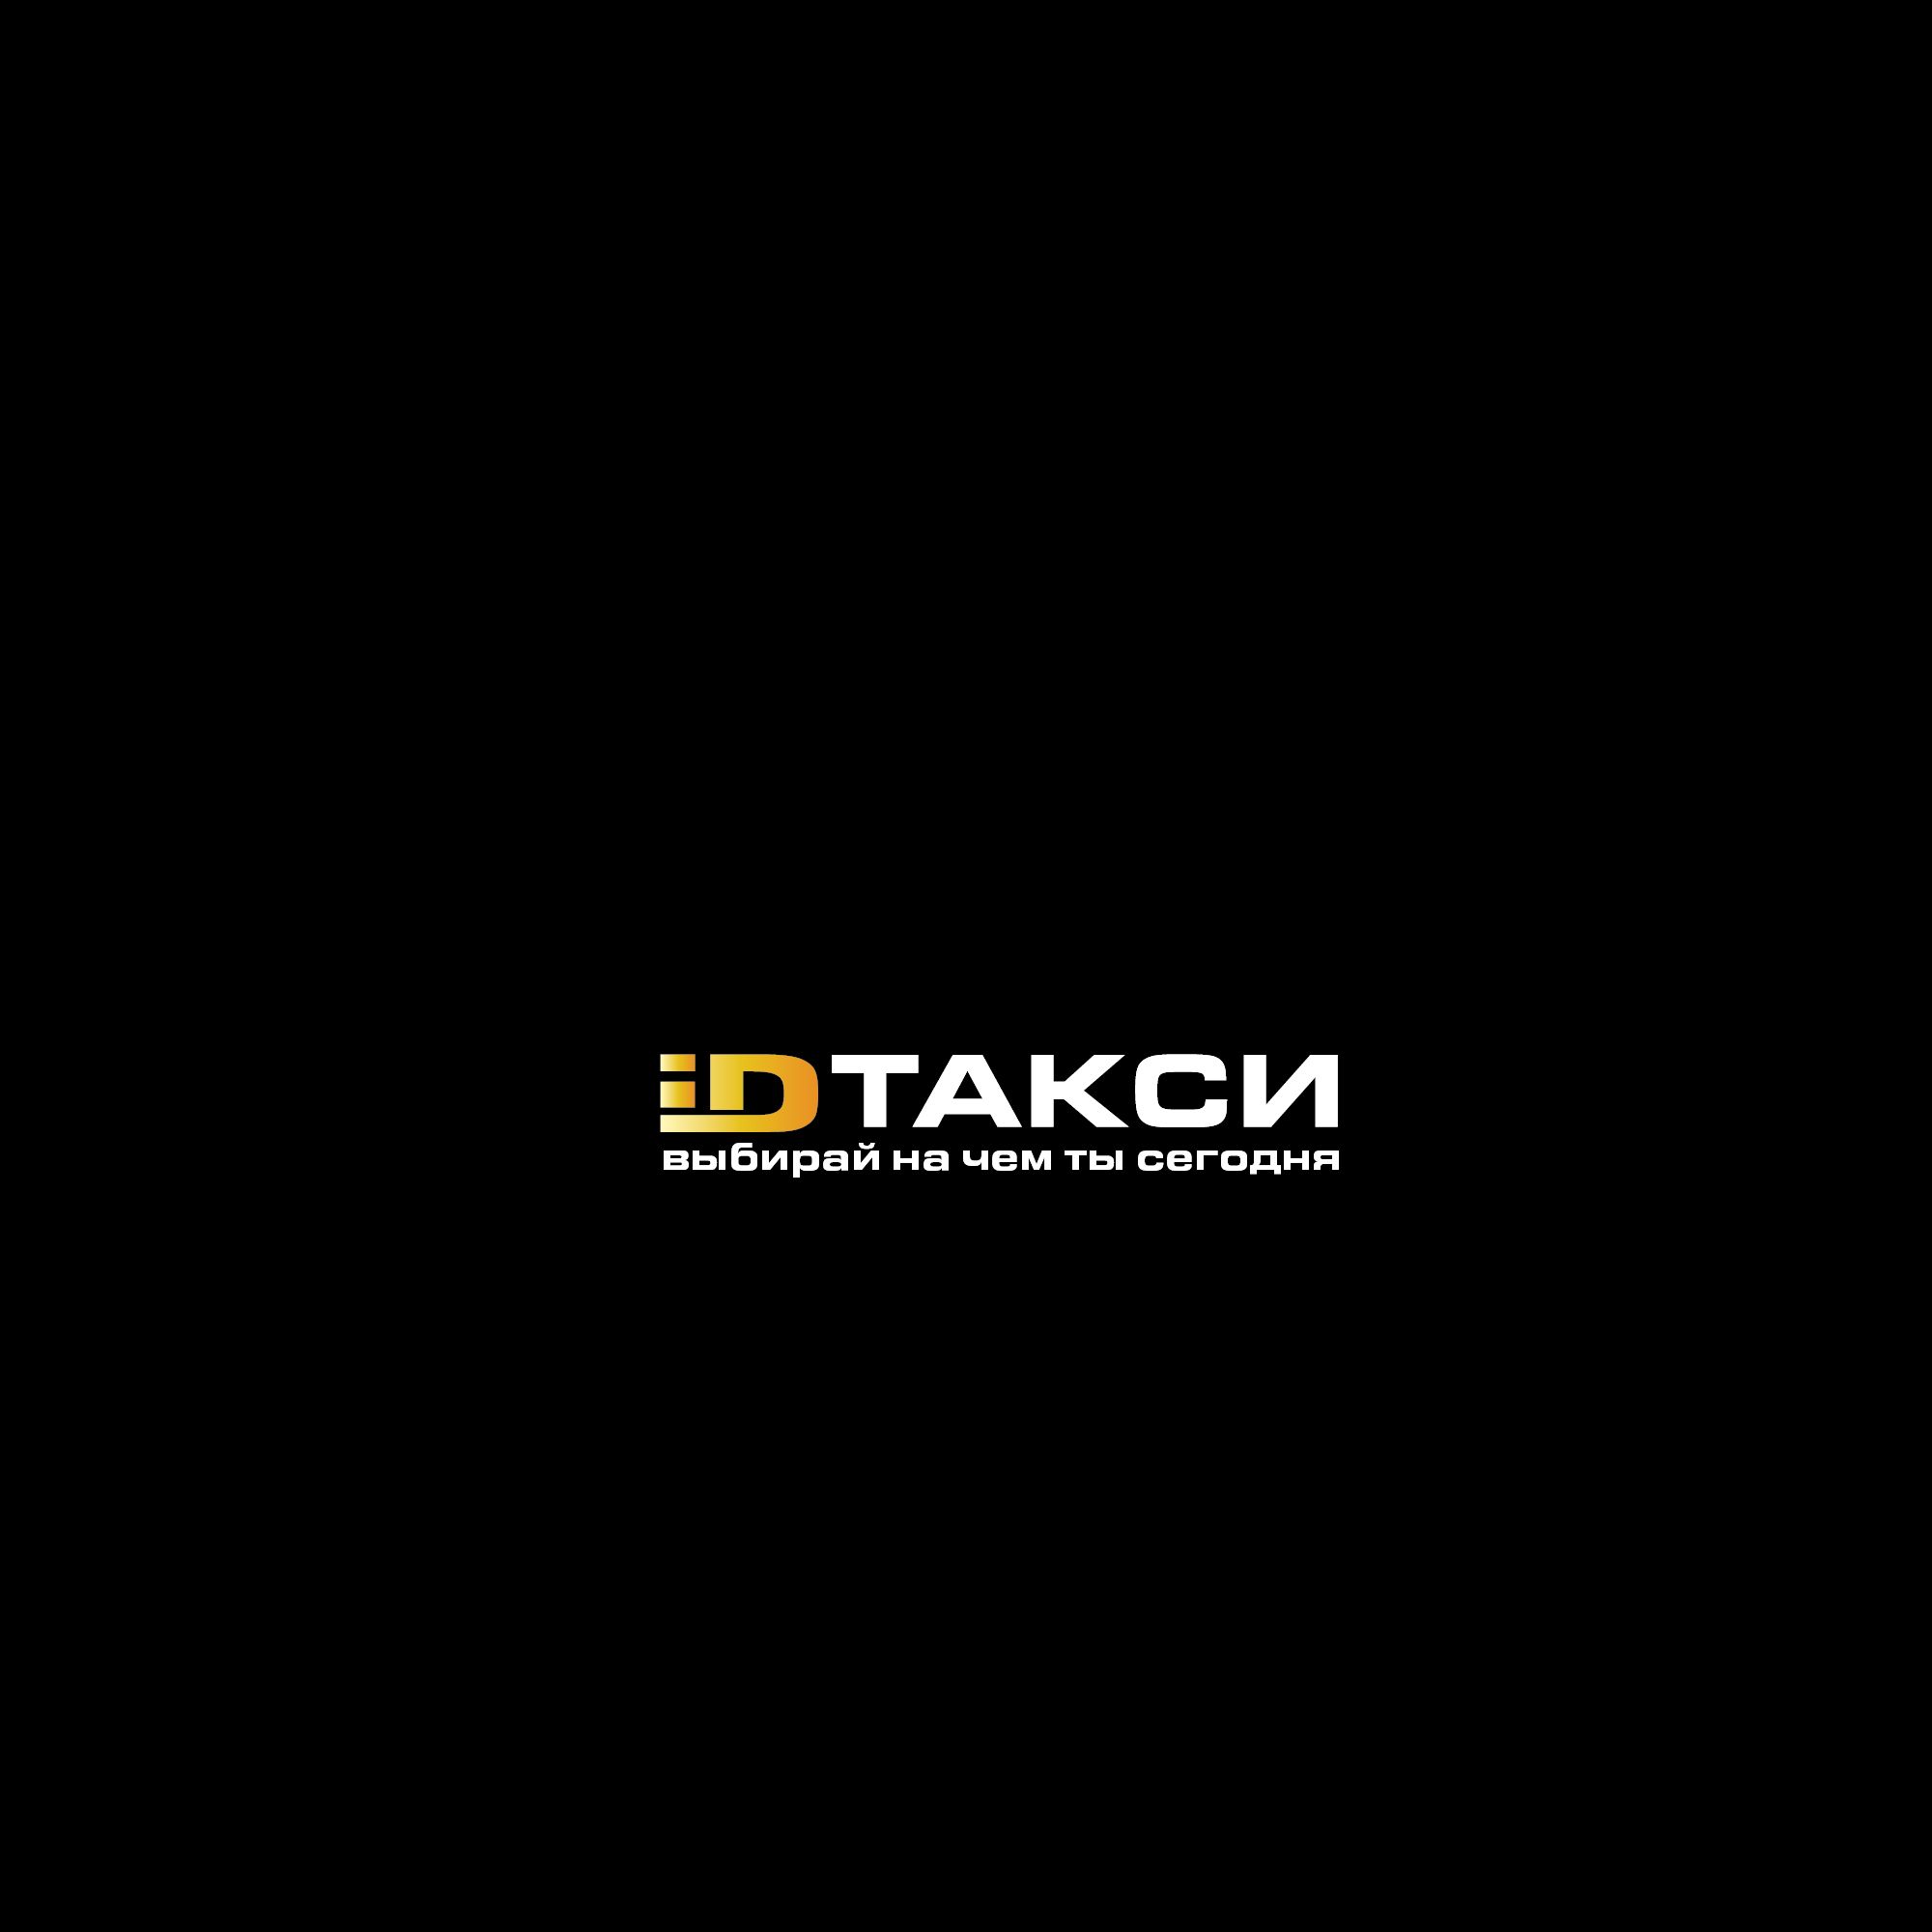 Лого и фирменный стиль для iD Такси - дизайнер SmolinDenis